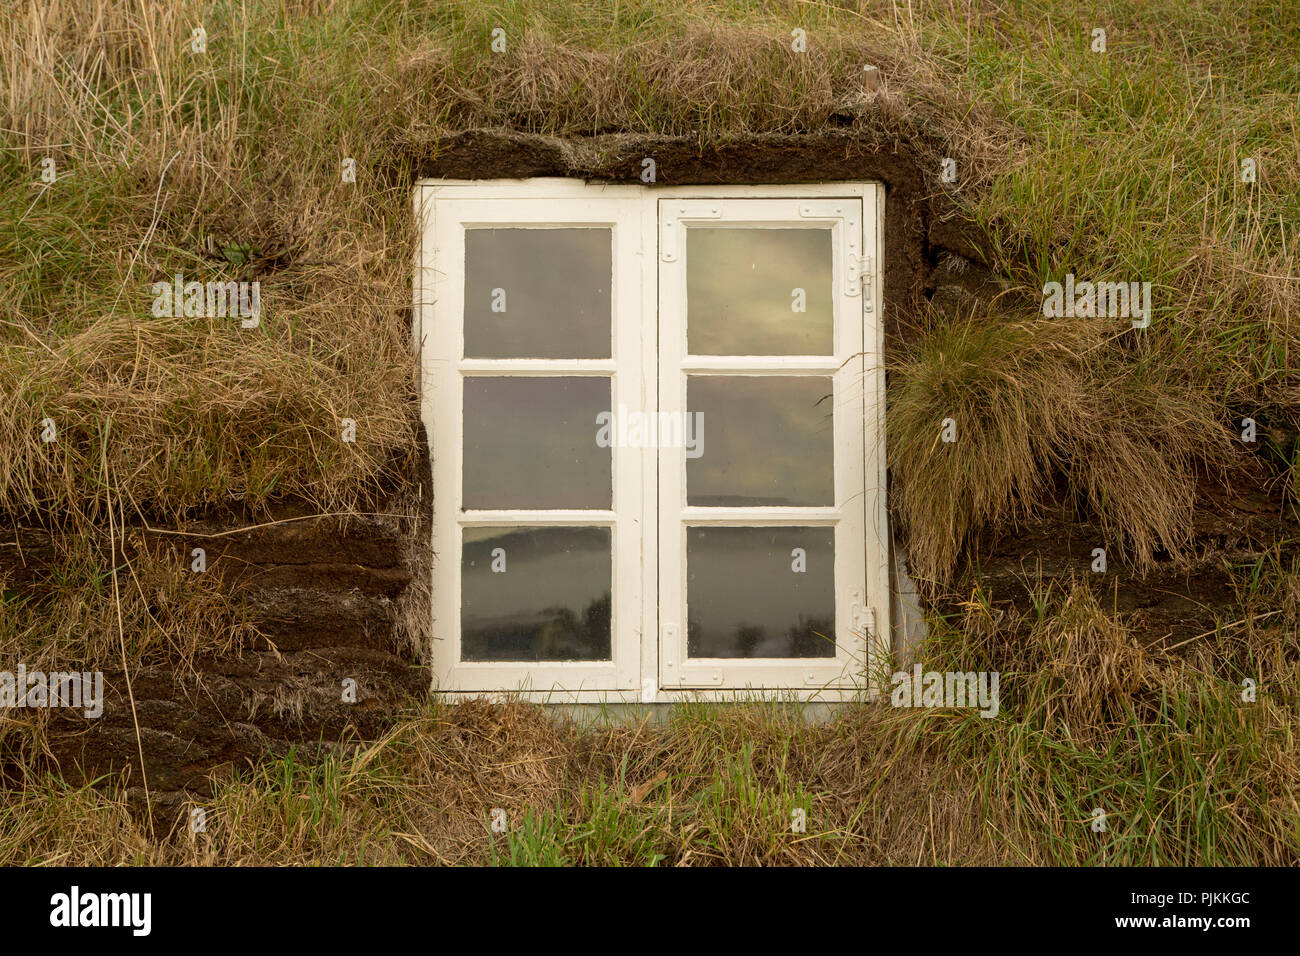 Island, Isländisch, Torfhaus, weiße Fenster in einem torfhaus, mit Gras umgeben Stockfoto